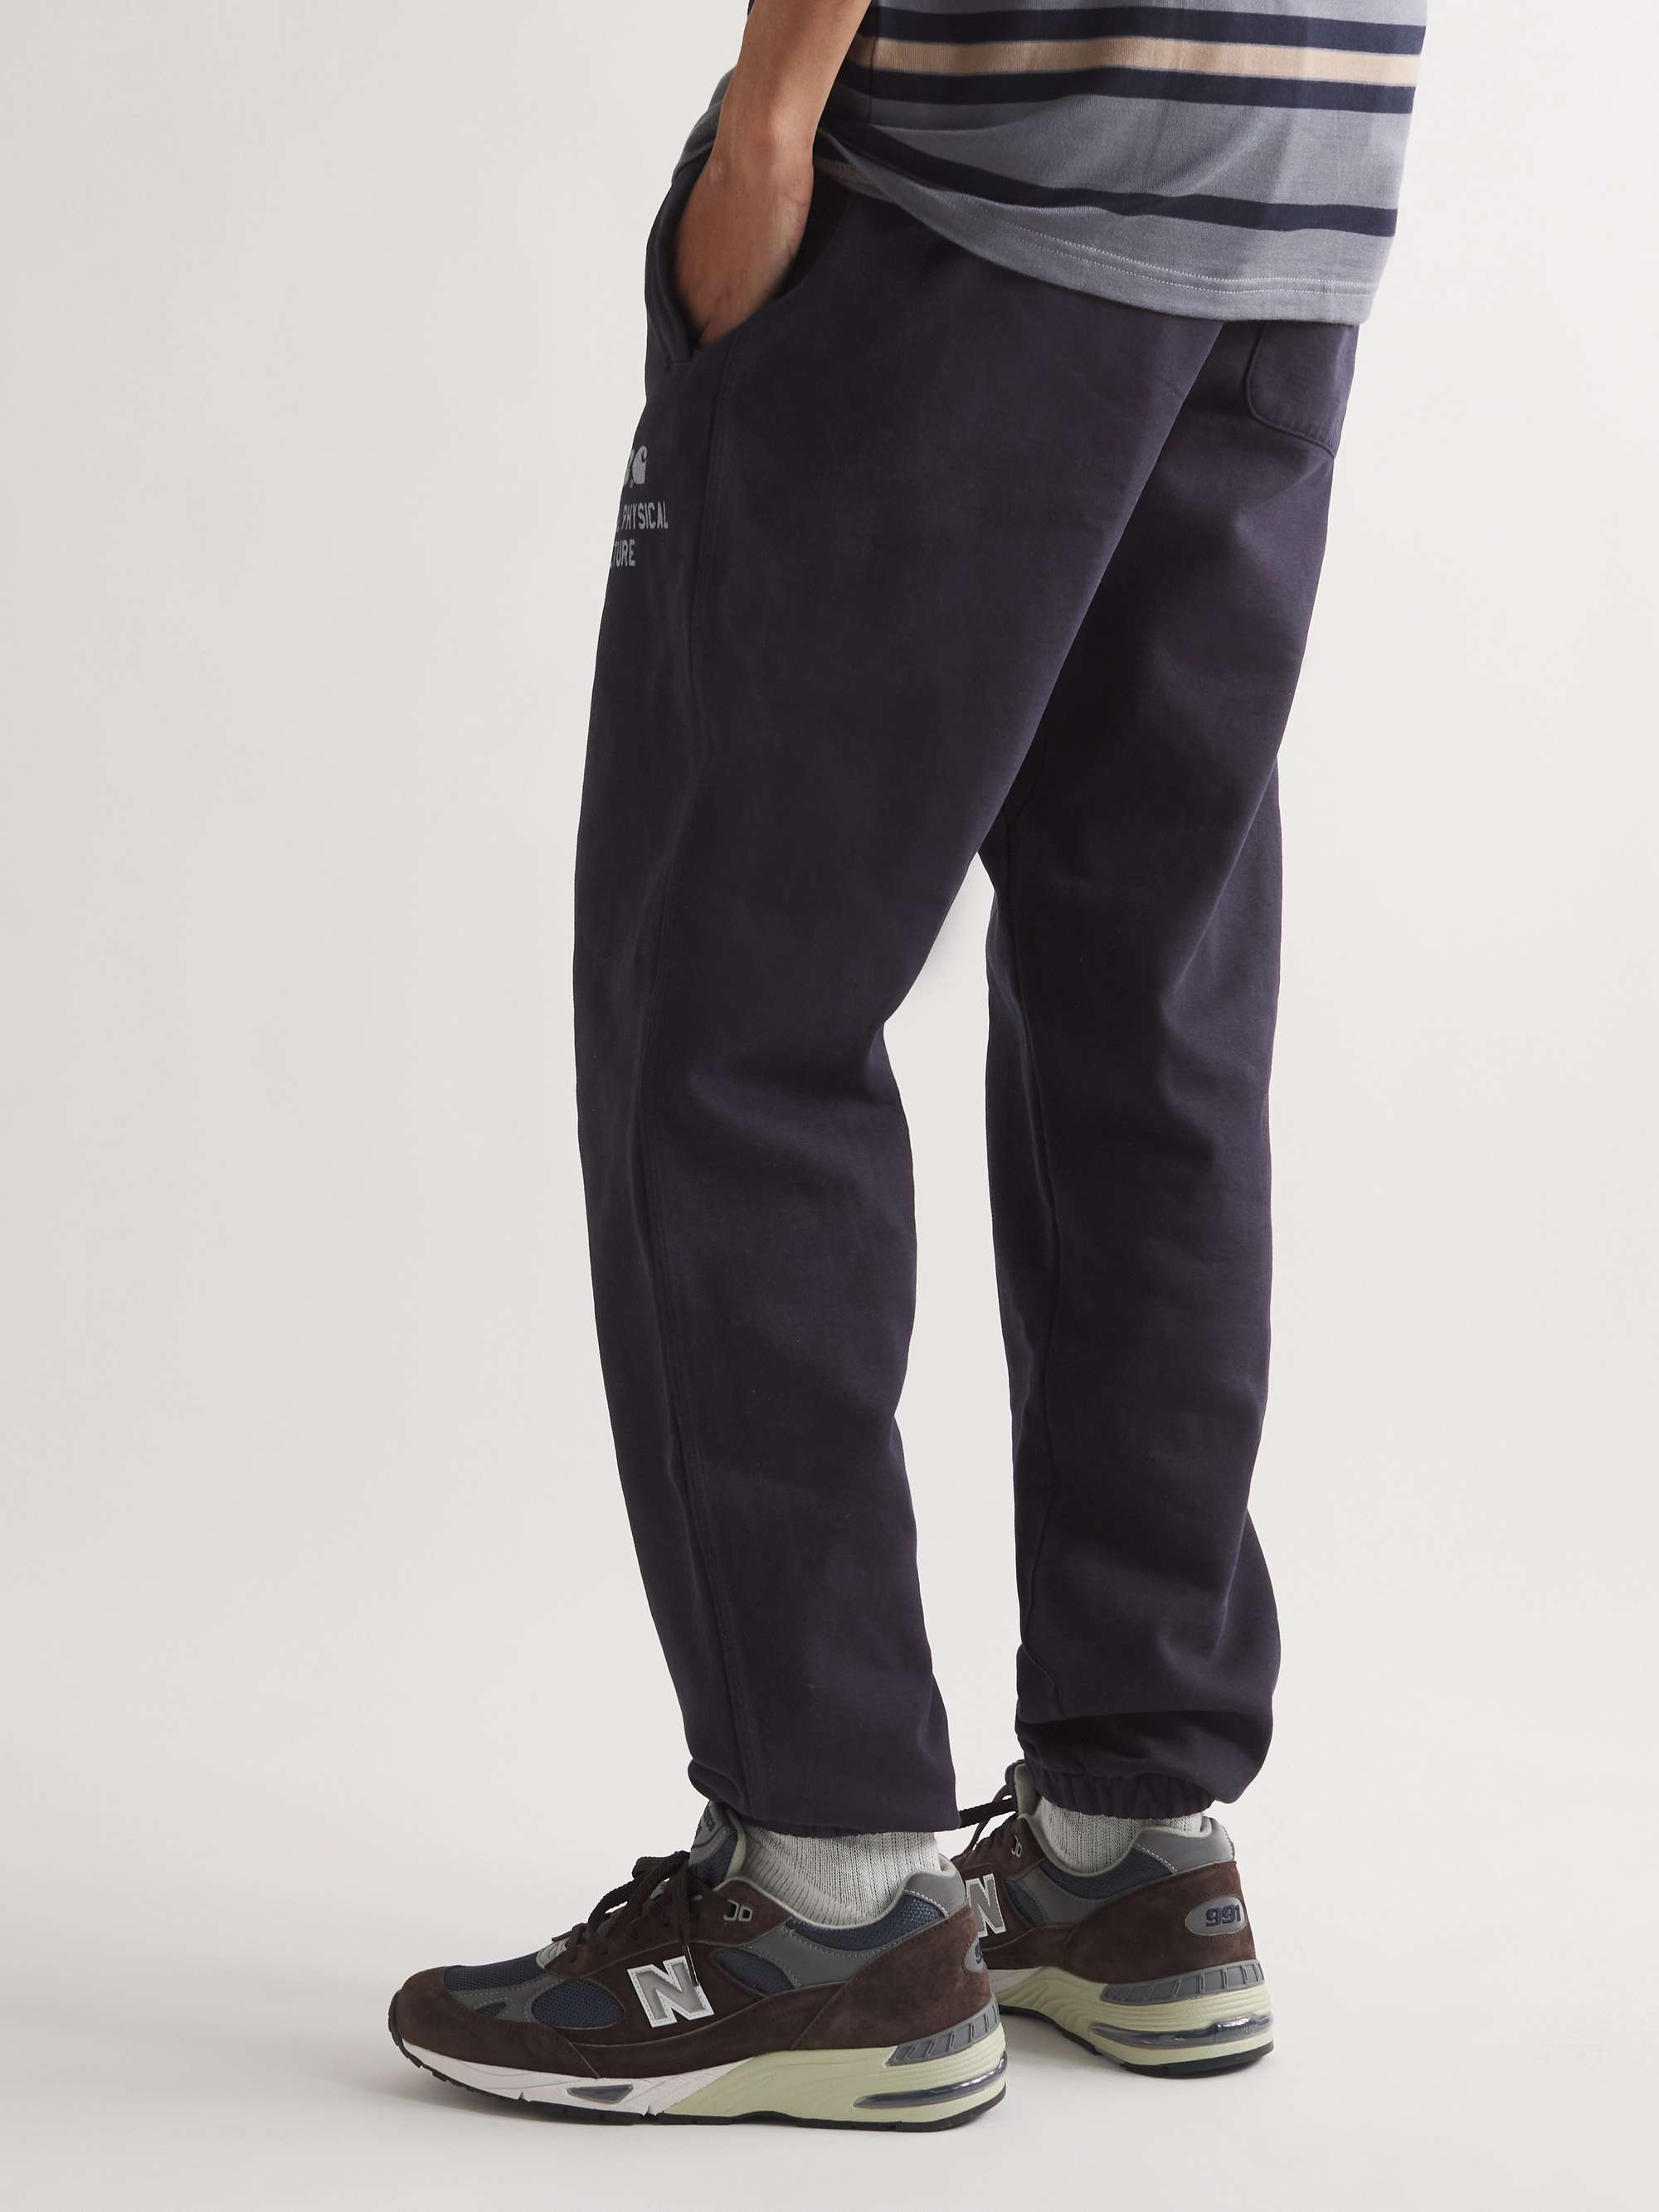 CARHARTT WIP + New Balance Sculpture Center Garment-Dyed Cotton-Blend Jersey Sweatpants